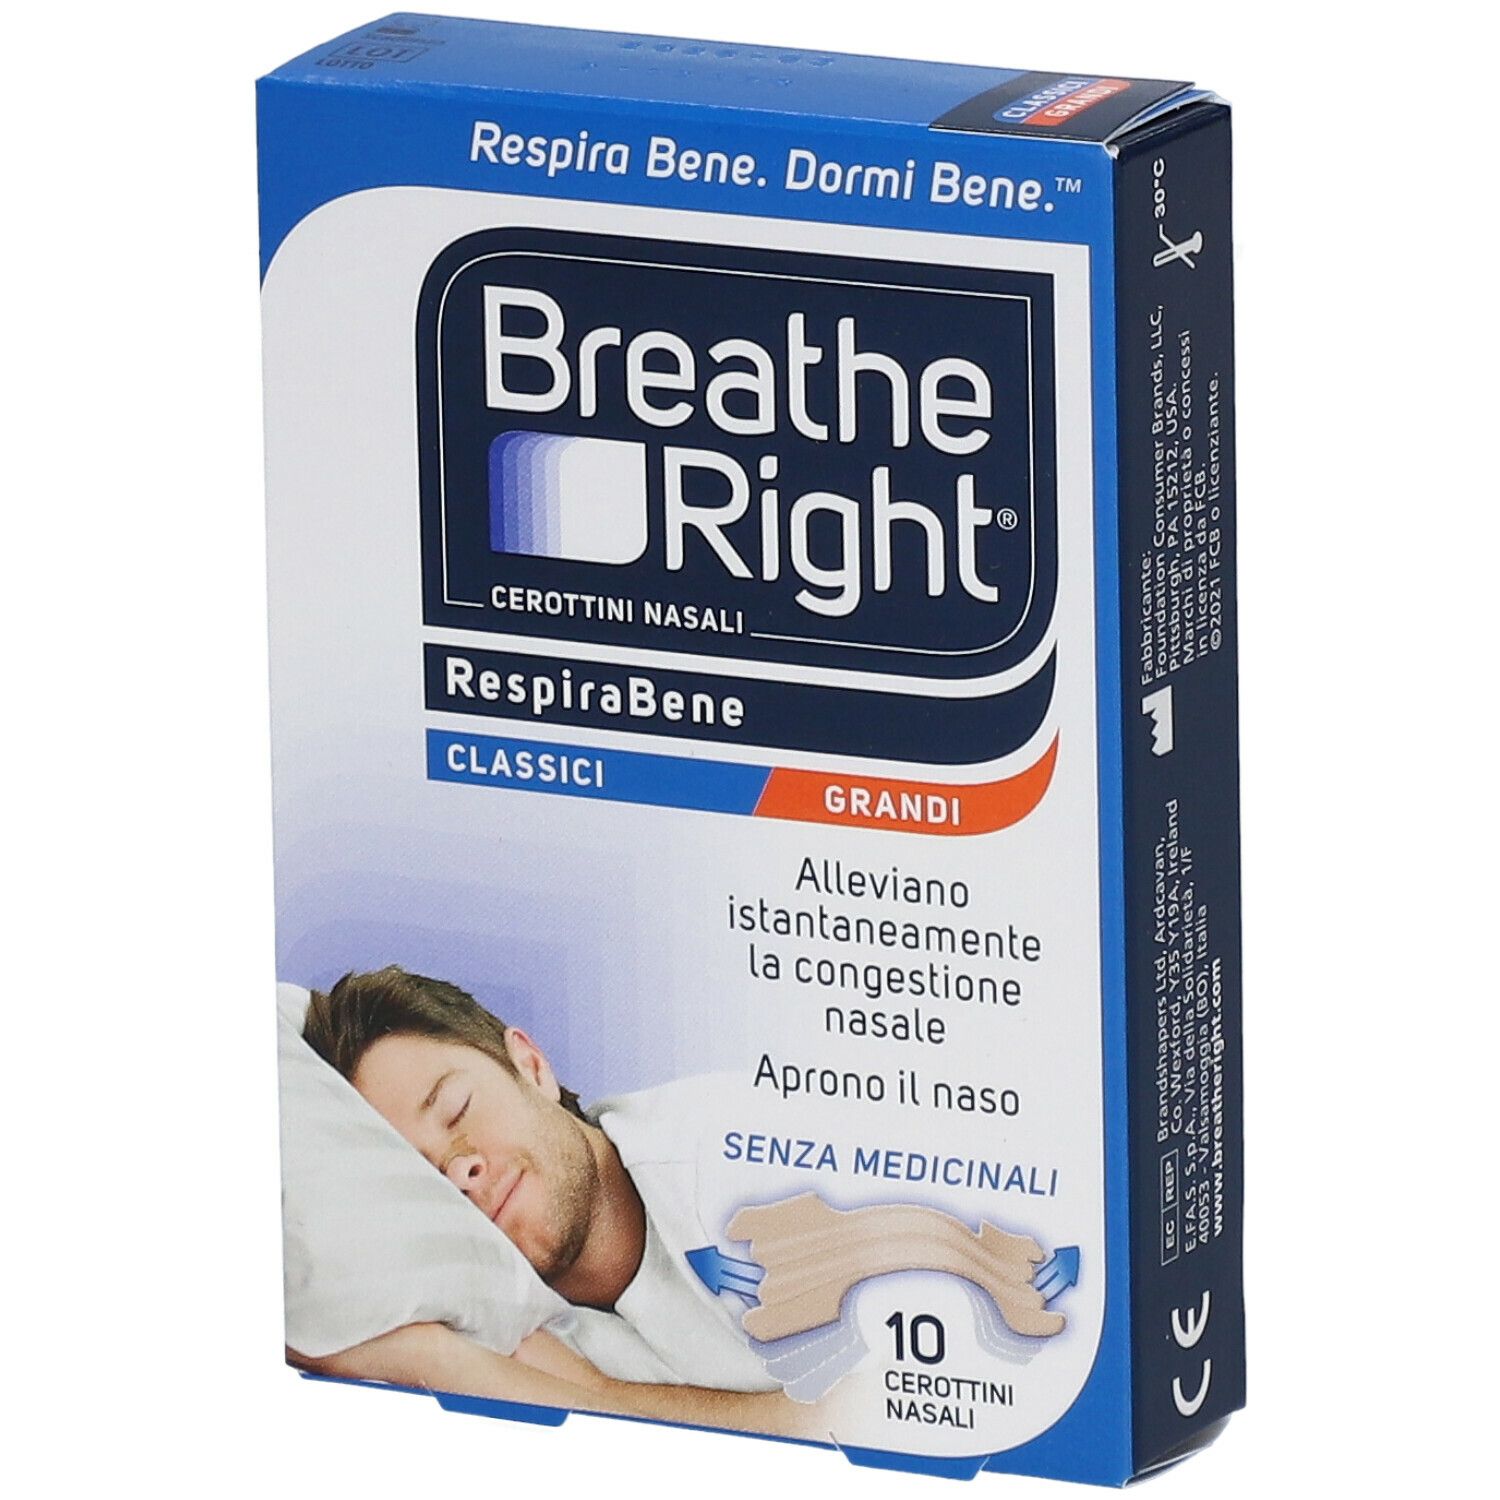 Breathe Right® RespiraBene Classici Grandi